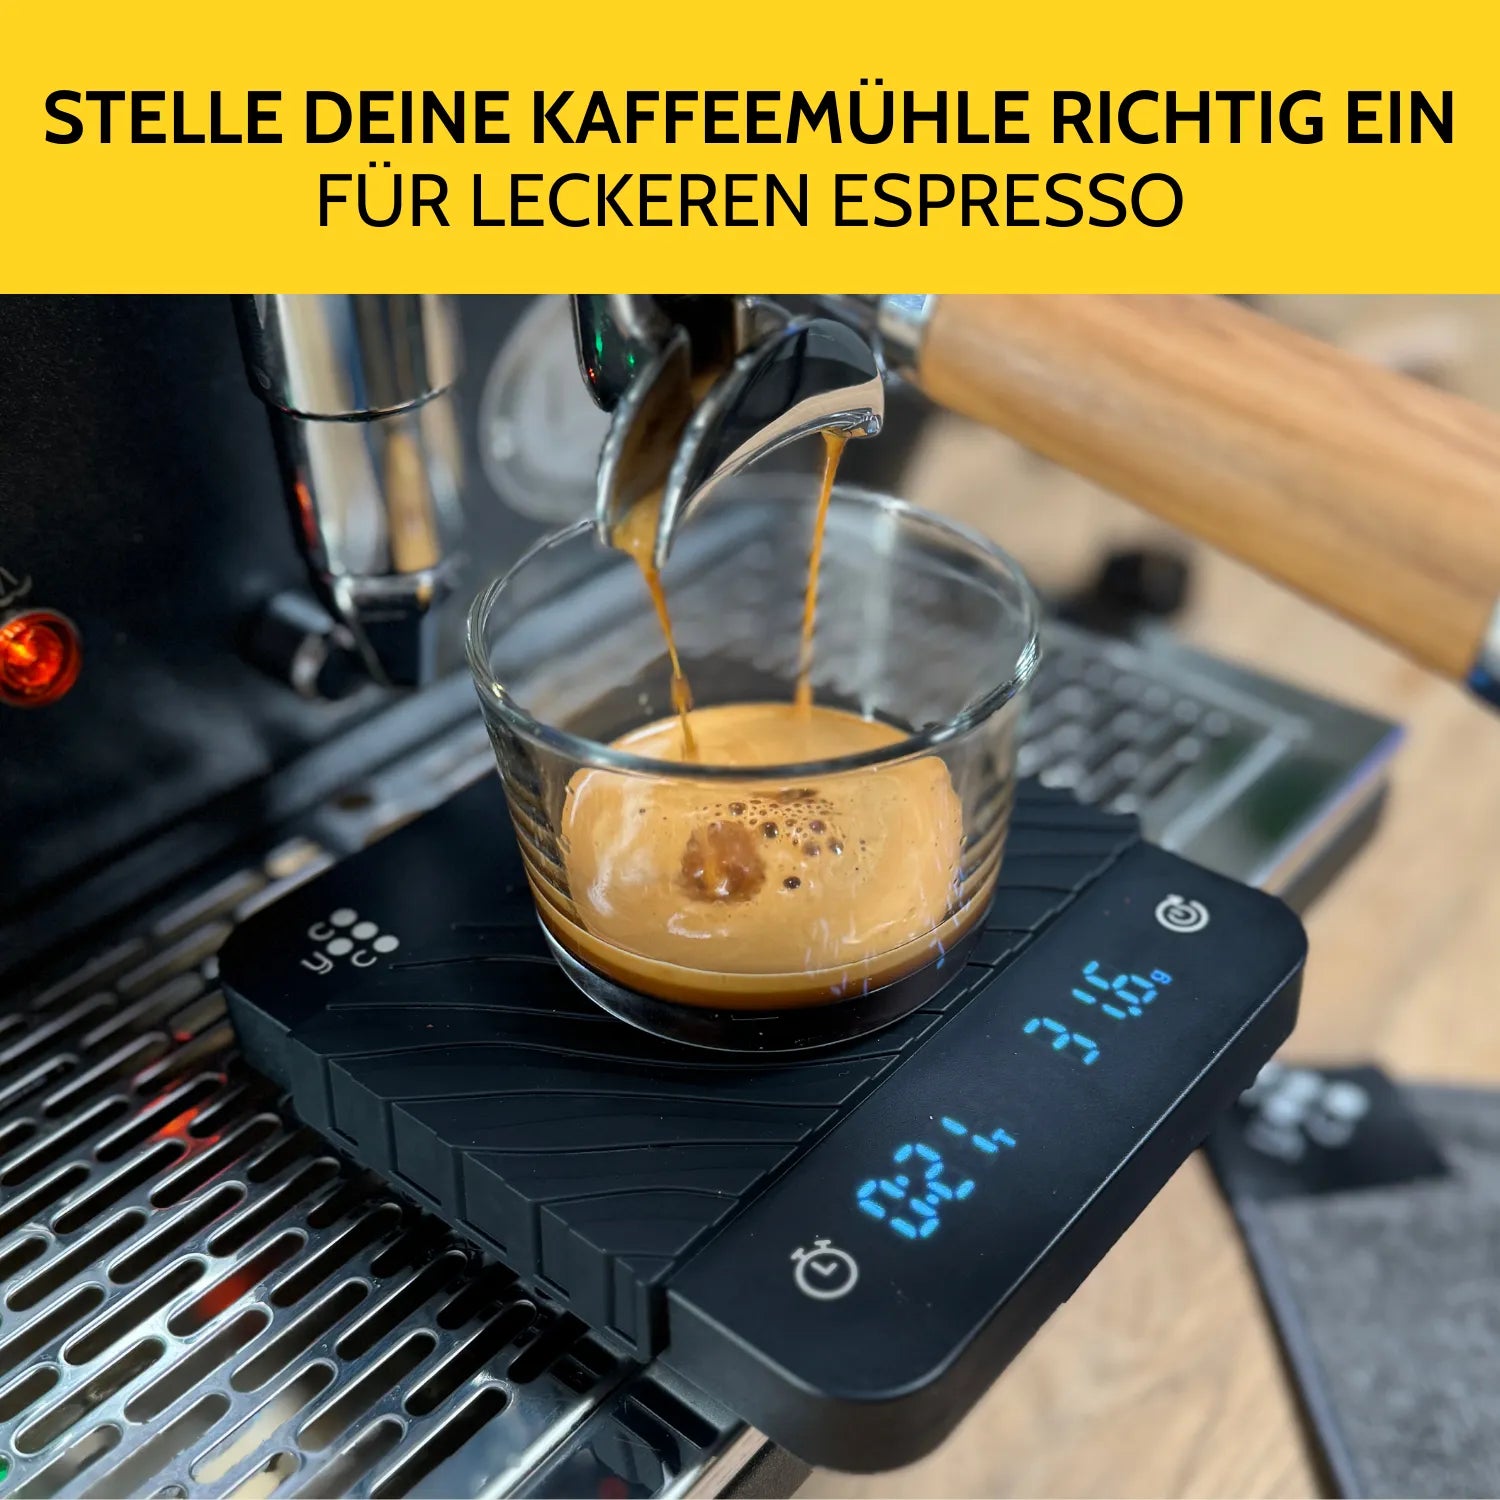 Espresso extrahiert in ein Kaffeeglas, welches auf der Kaffeewaage steht. 